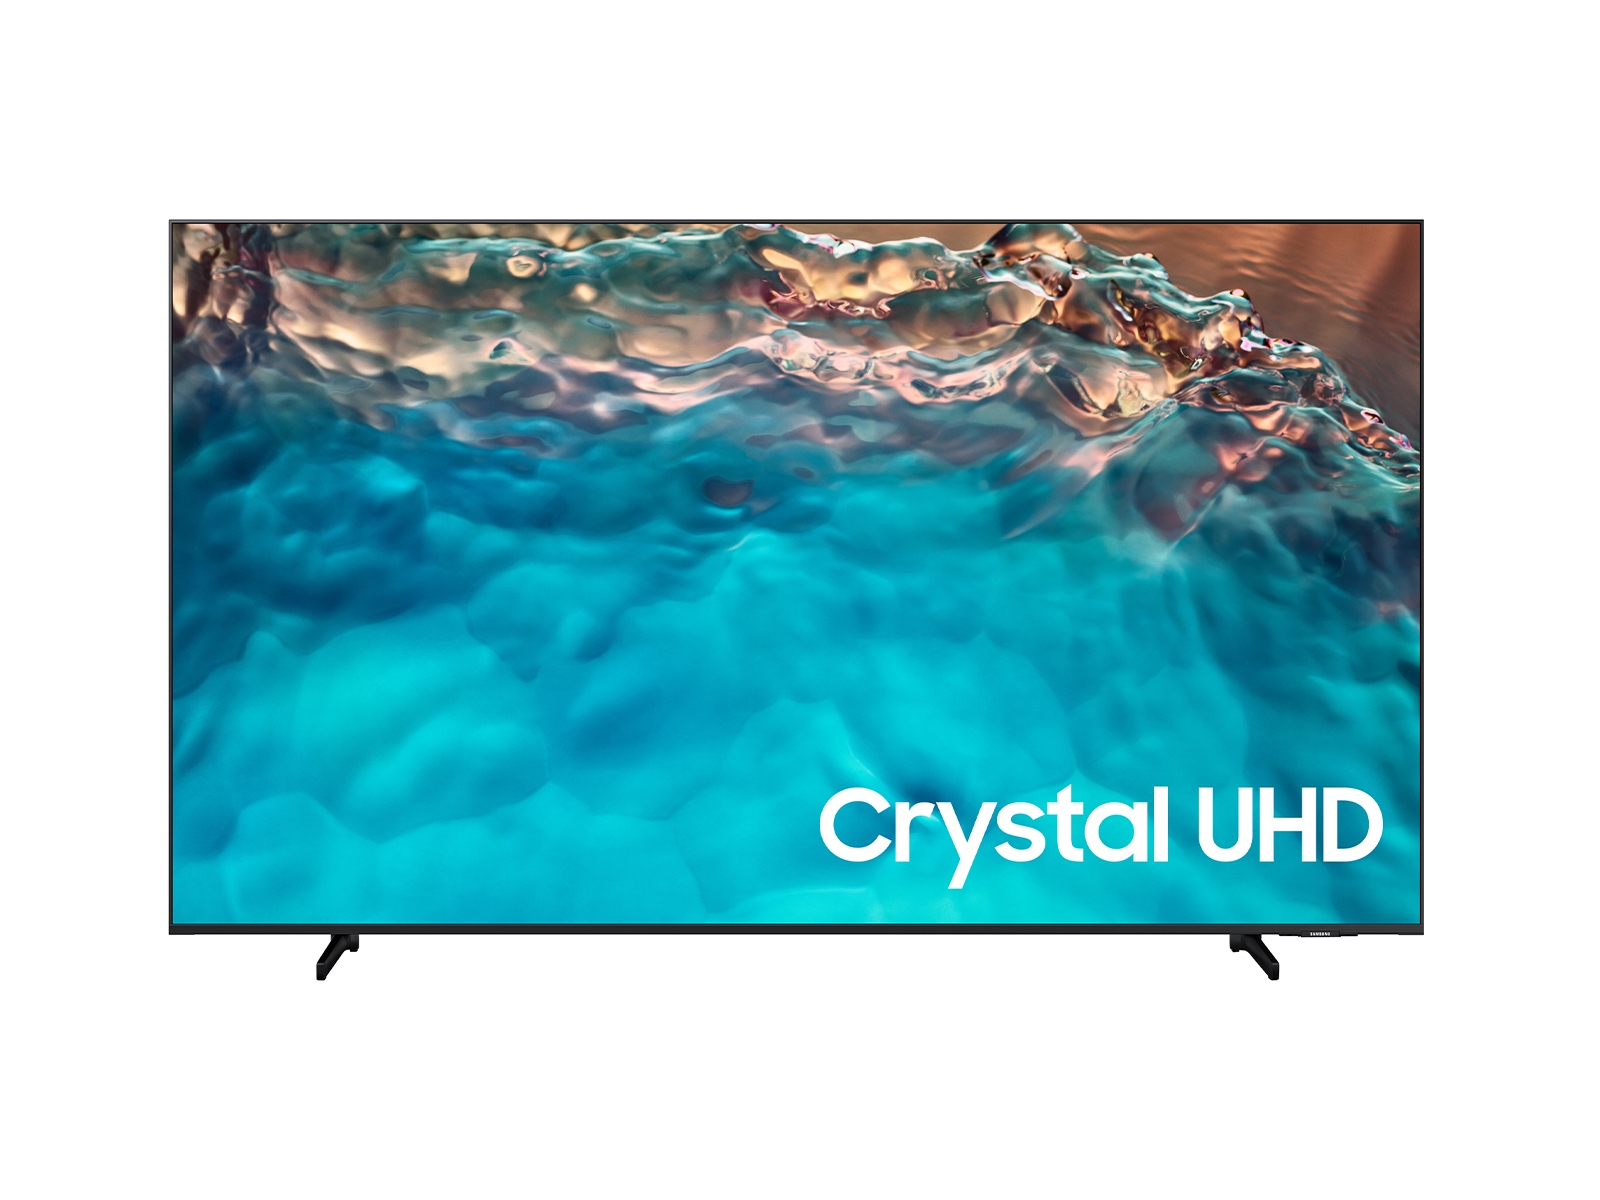 Samsung TV LED 55, UHD, 4K, SMART, Q-Symphony, 20W